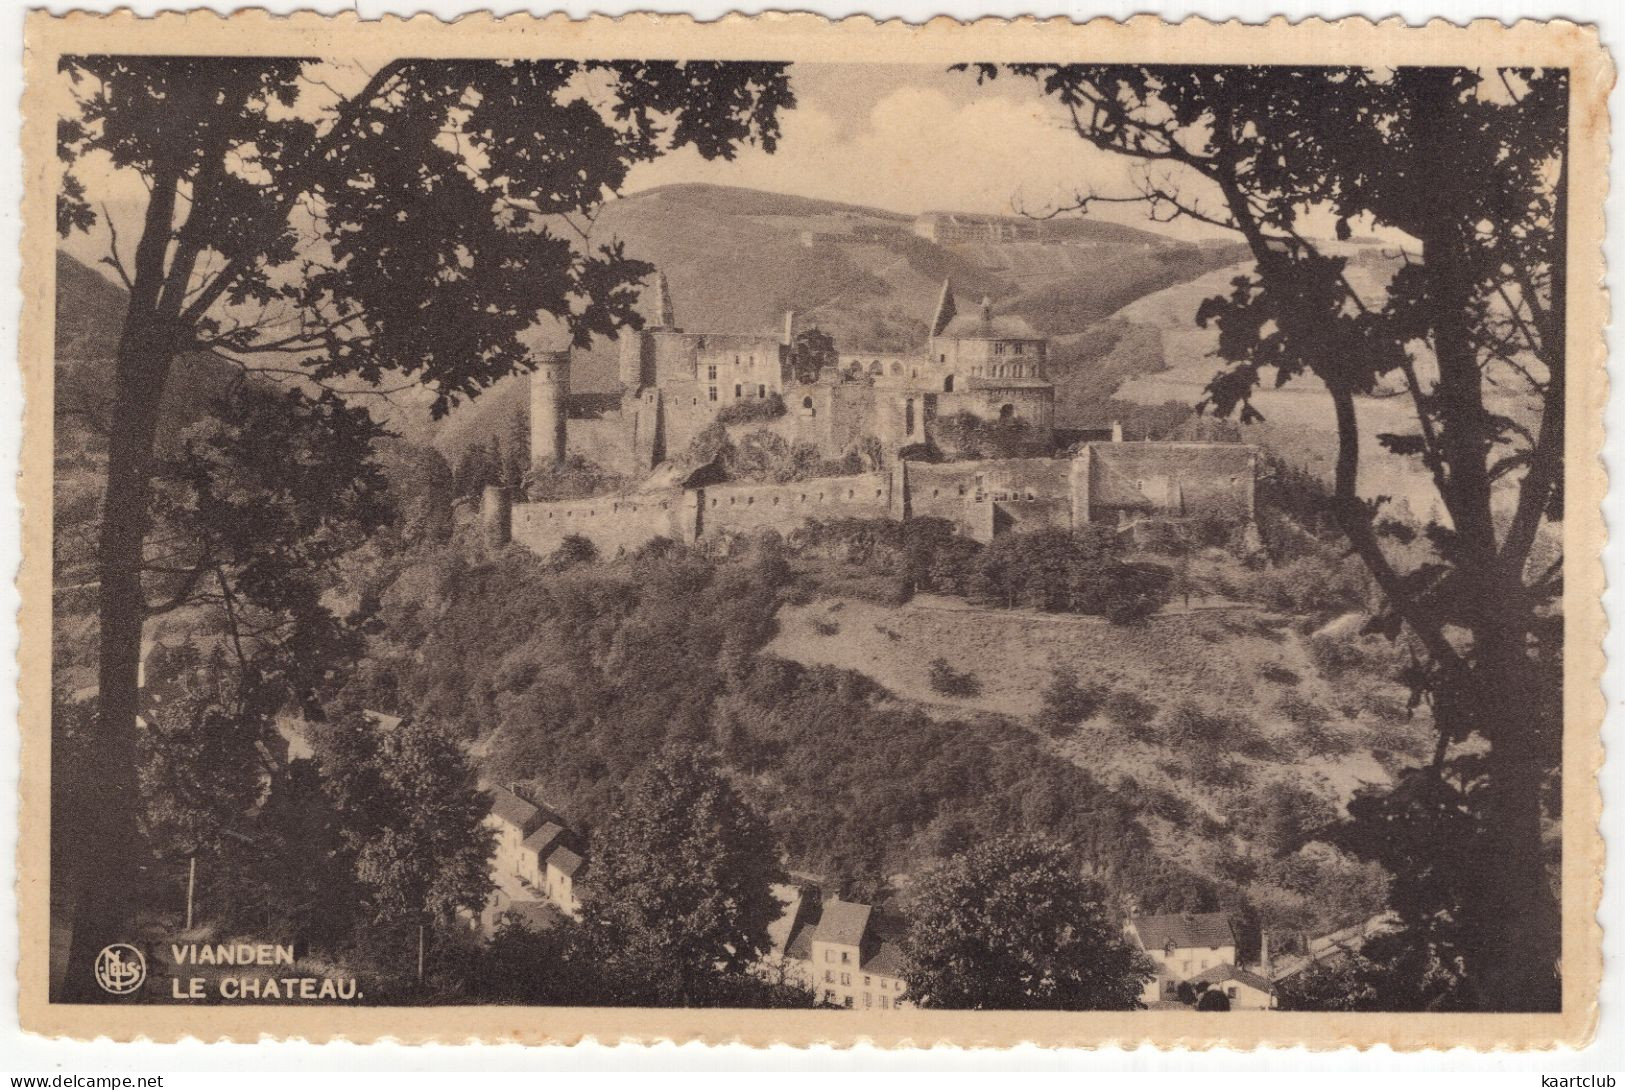 Vianden - Le Chateau. - (Luxembourg) - 1956 - Vianden